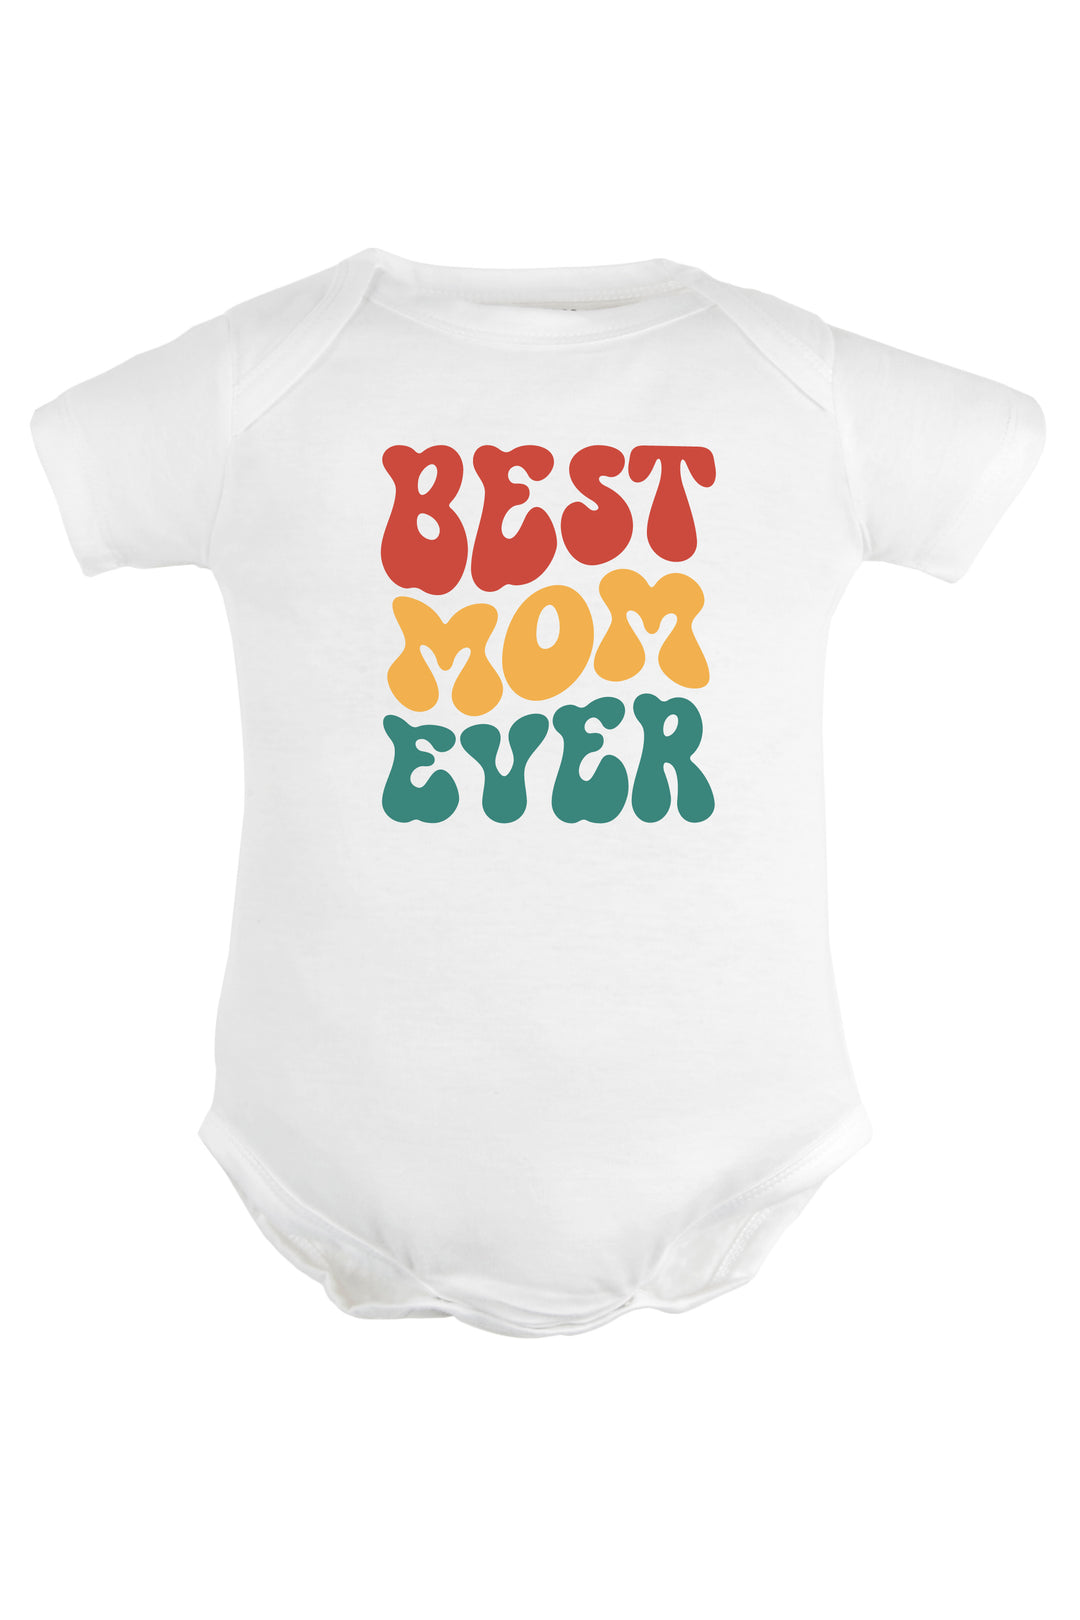 Best Mom Ever Baby Romper | Onesies